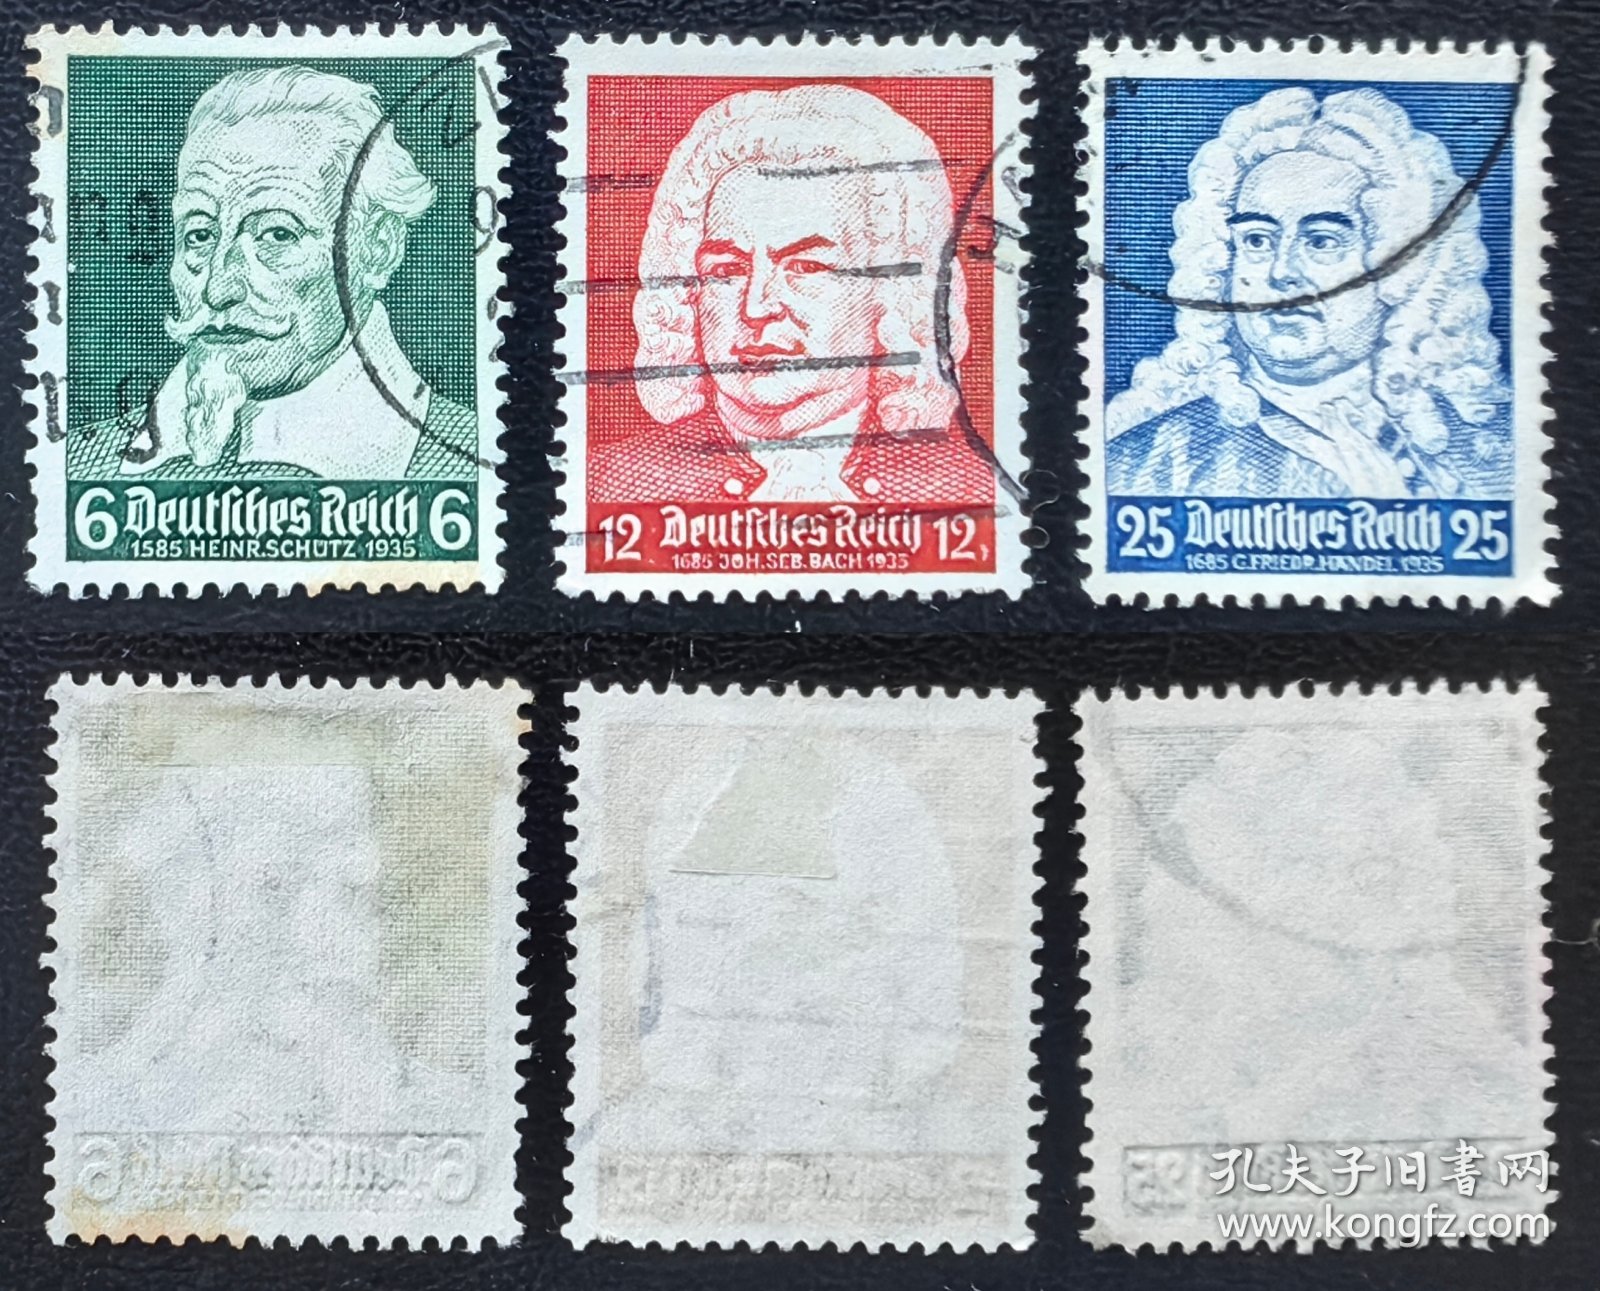 2-783德国1935年信销邮票3全。海因里希·舒茨、巴赫、汉德尔。人物肖像。2015斯科特目录2.5美元。